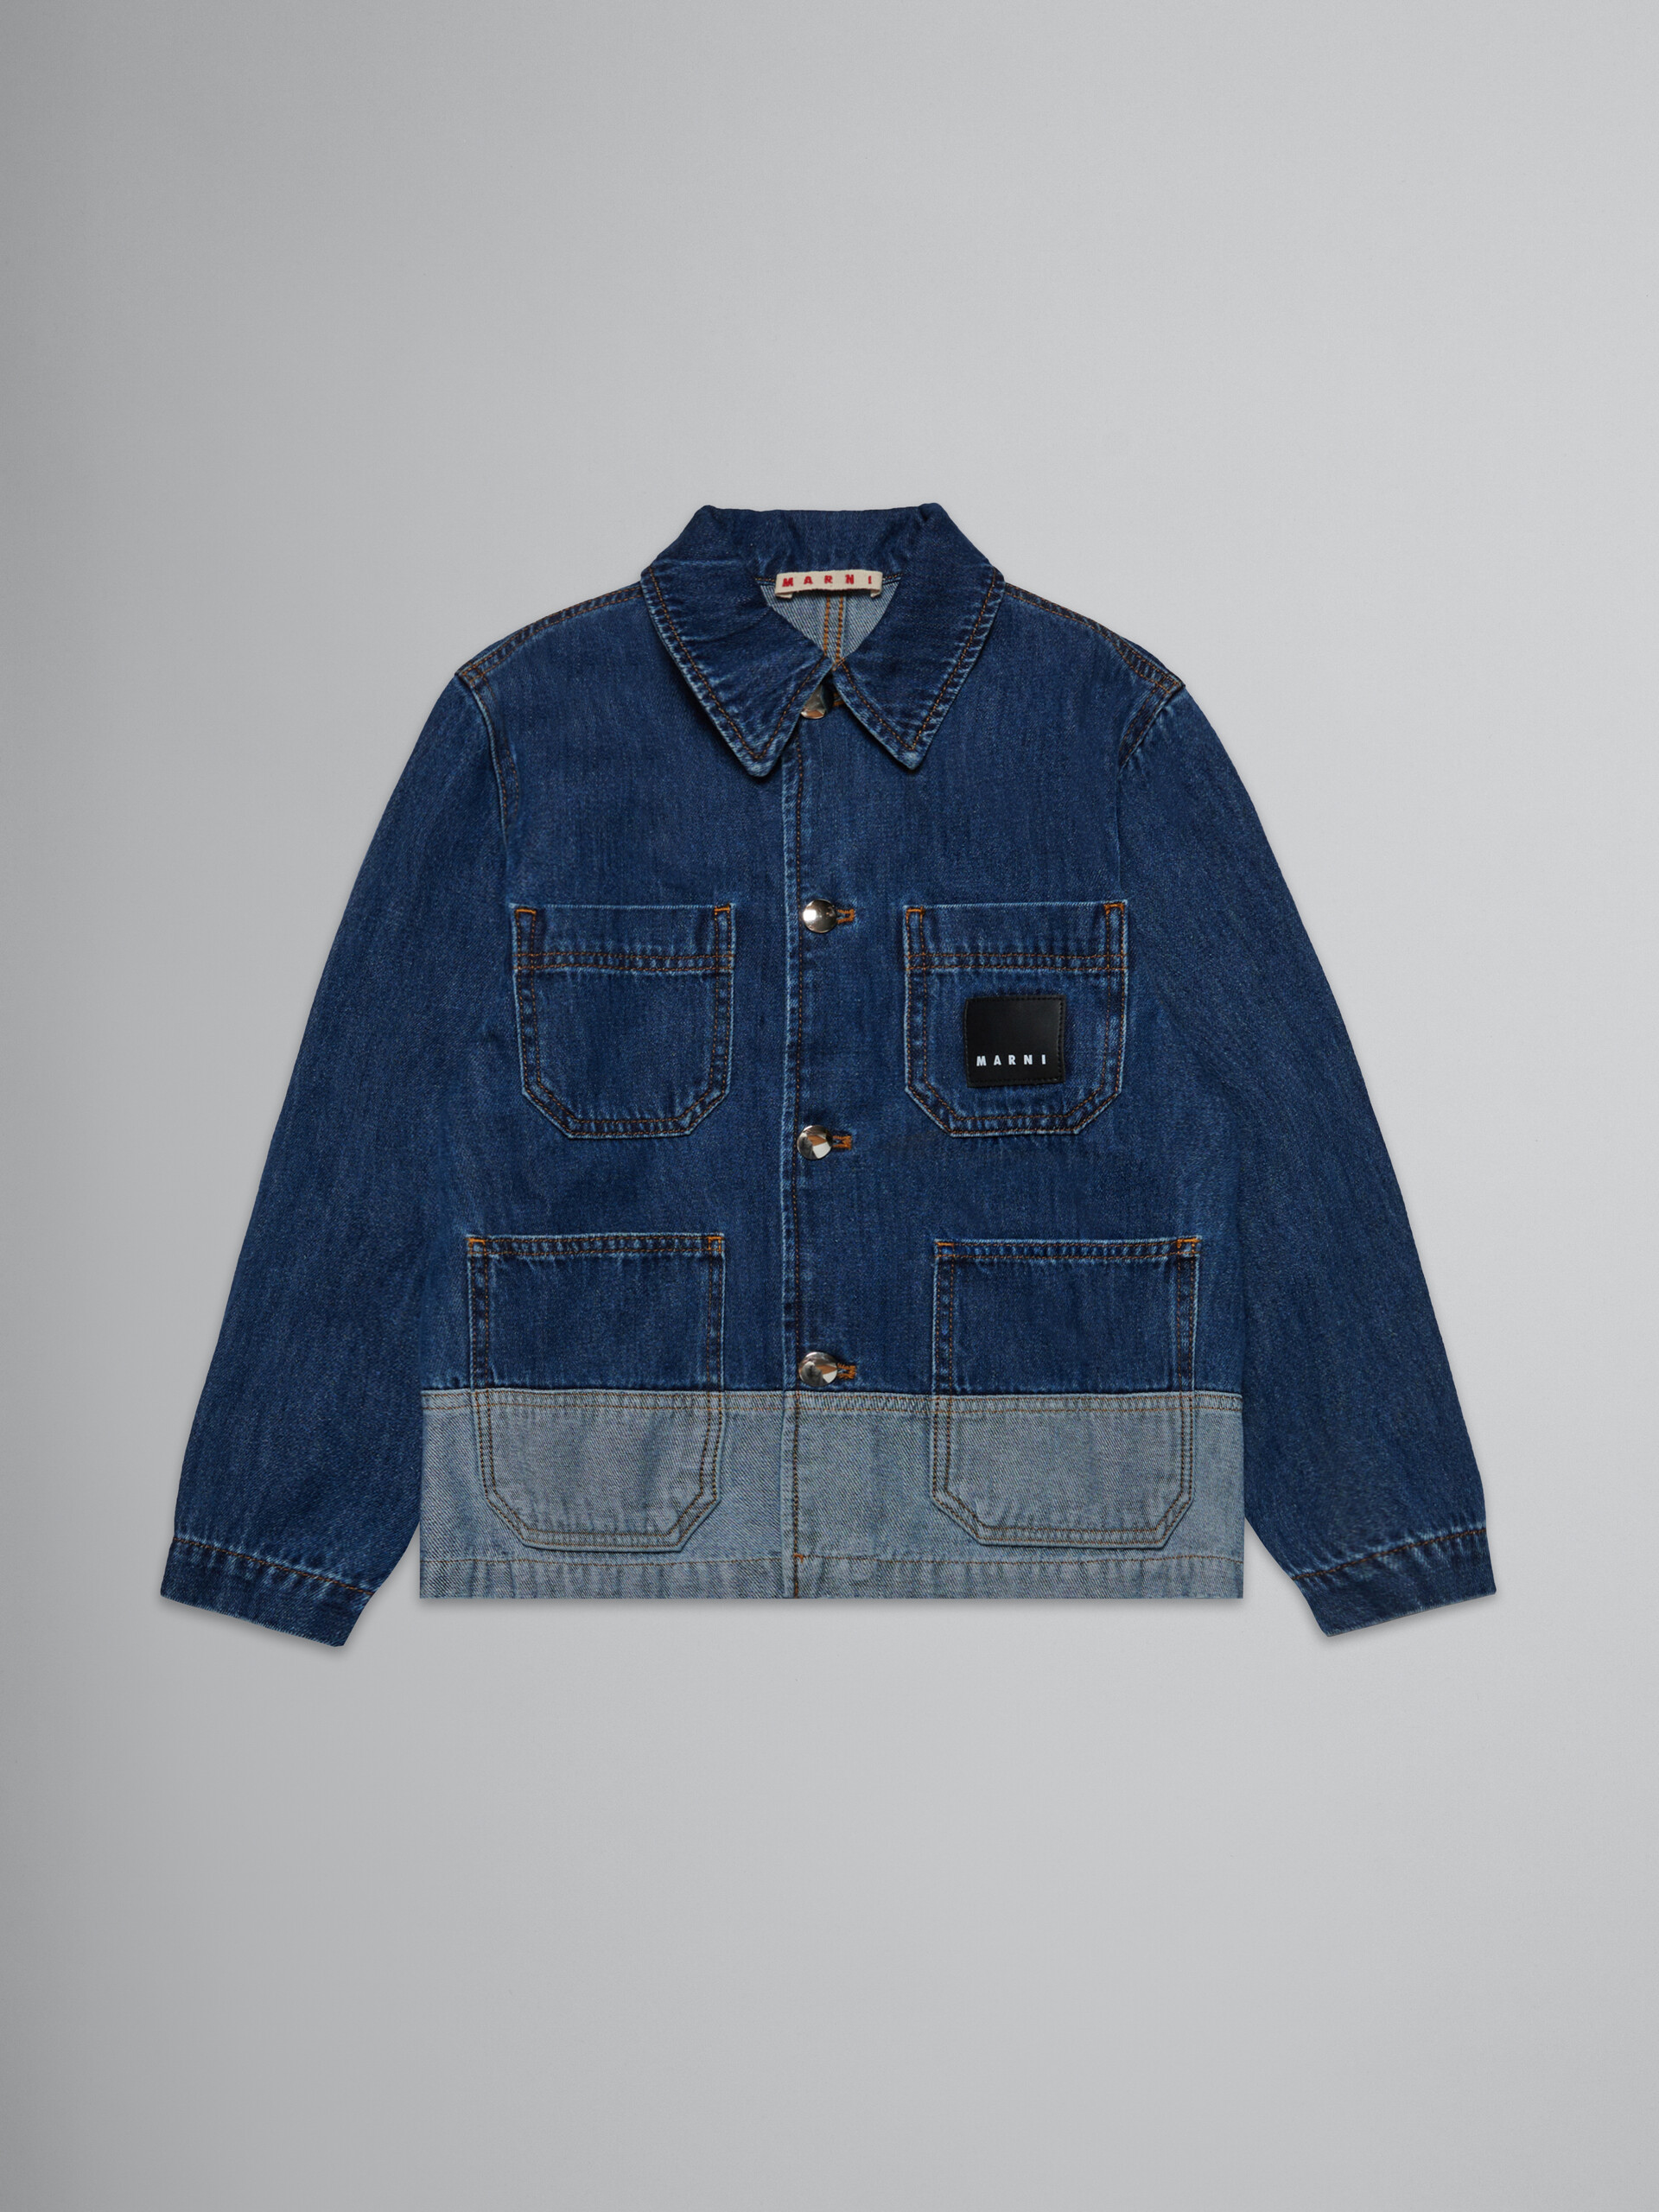 Two-tone denim jacket - Jackets - Image 1